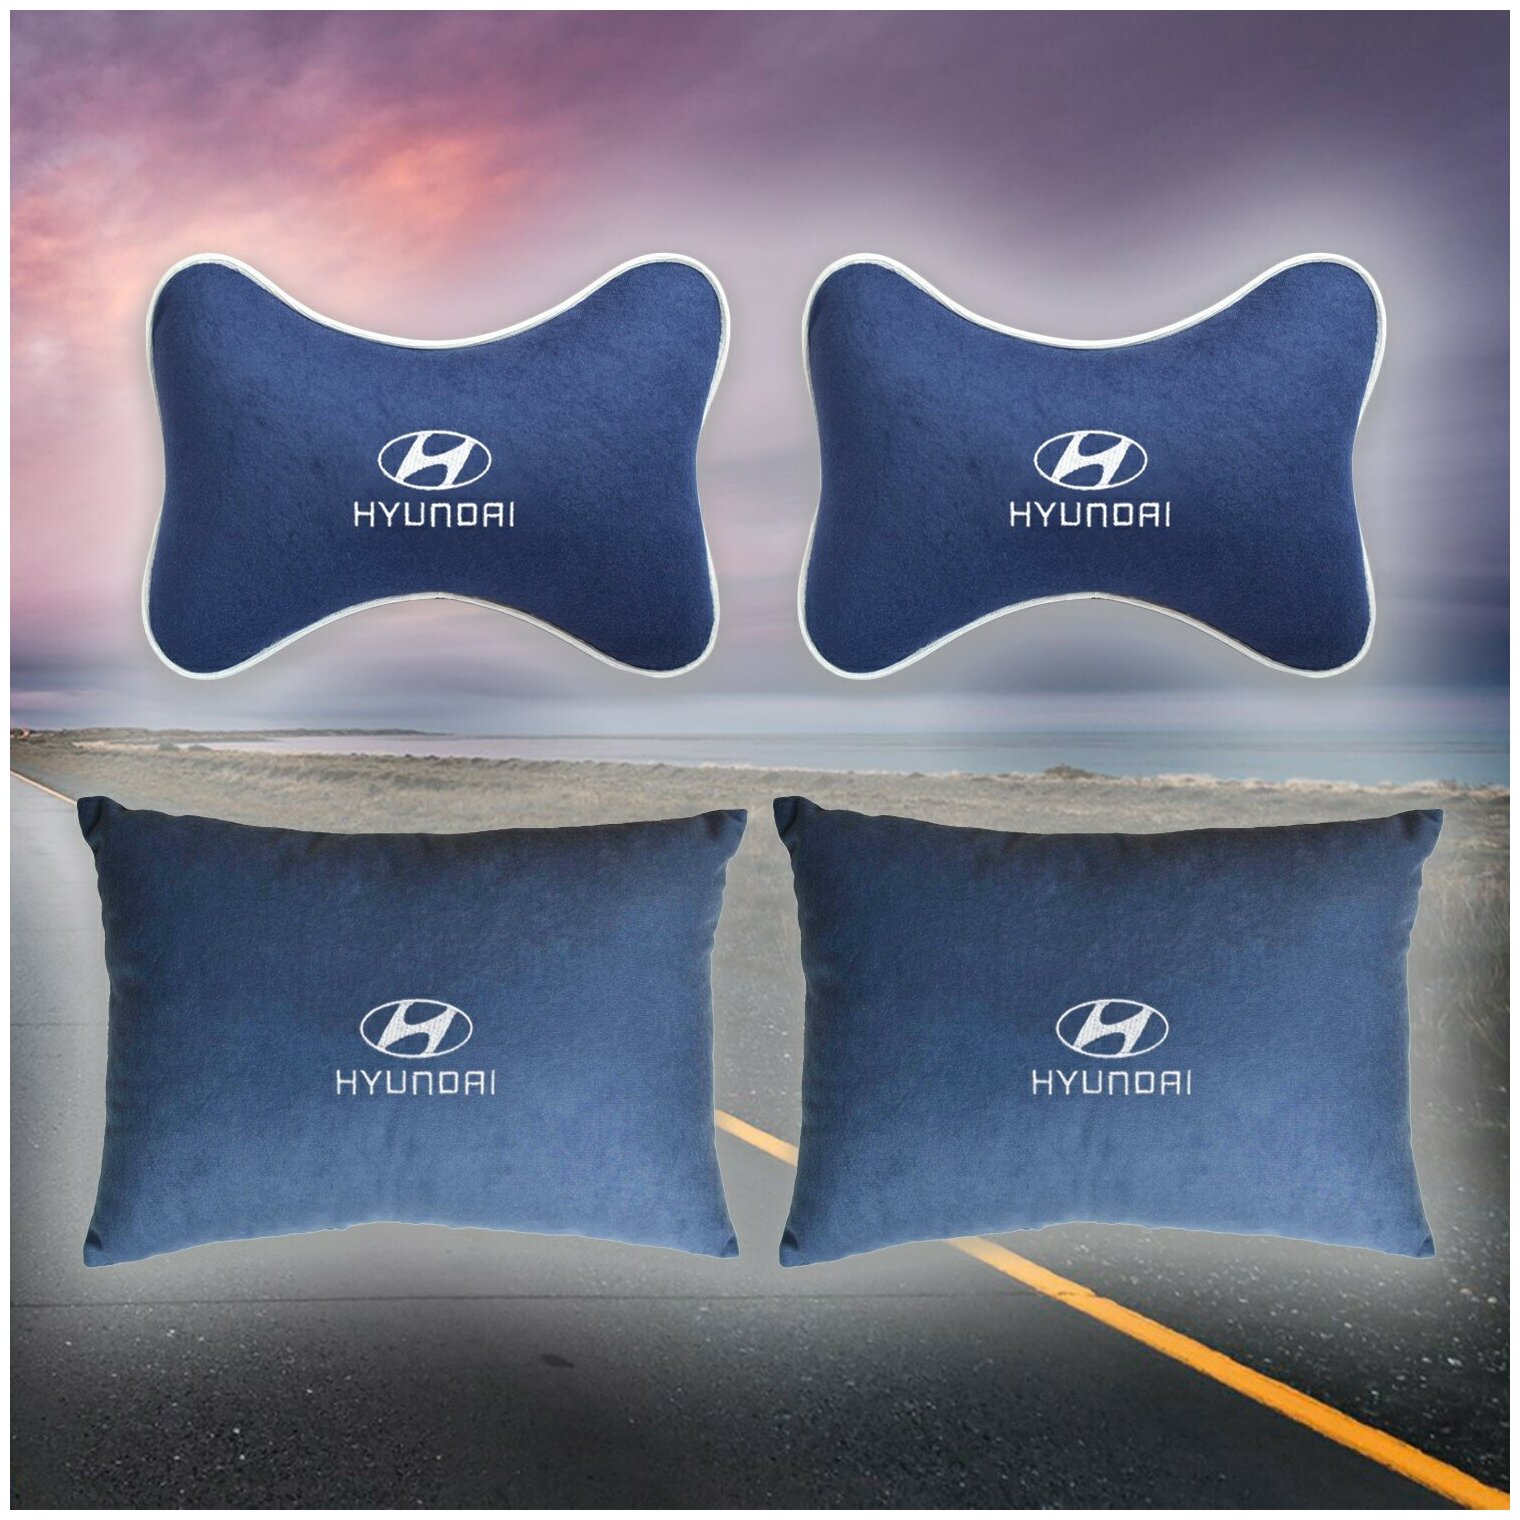 Комплект автомобильных подушек из велюра для Hyundai синяя